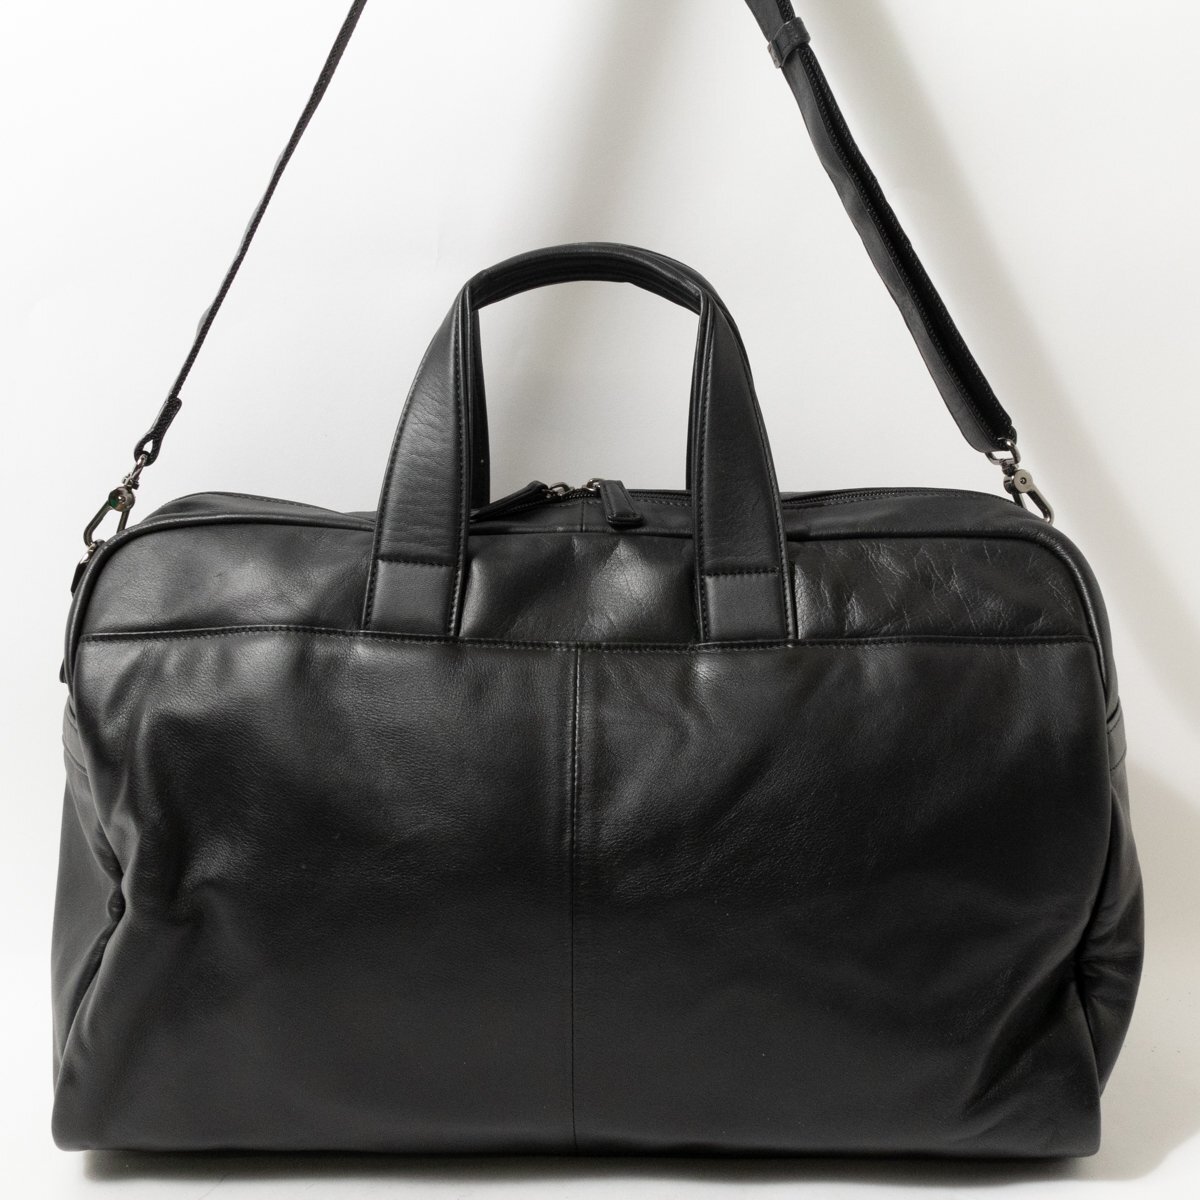 [1 иен старт ]OFFERMANNo мех man 2way сумка "Boston bag" сумка на плечо джентльмен сумка черный чёрный кожа мужской застежка-молния открытие и закрытие одноцветный 